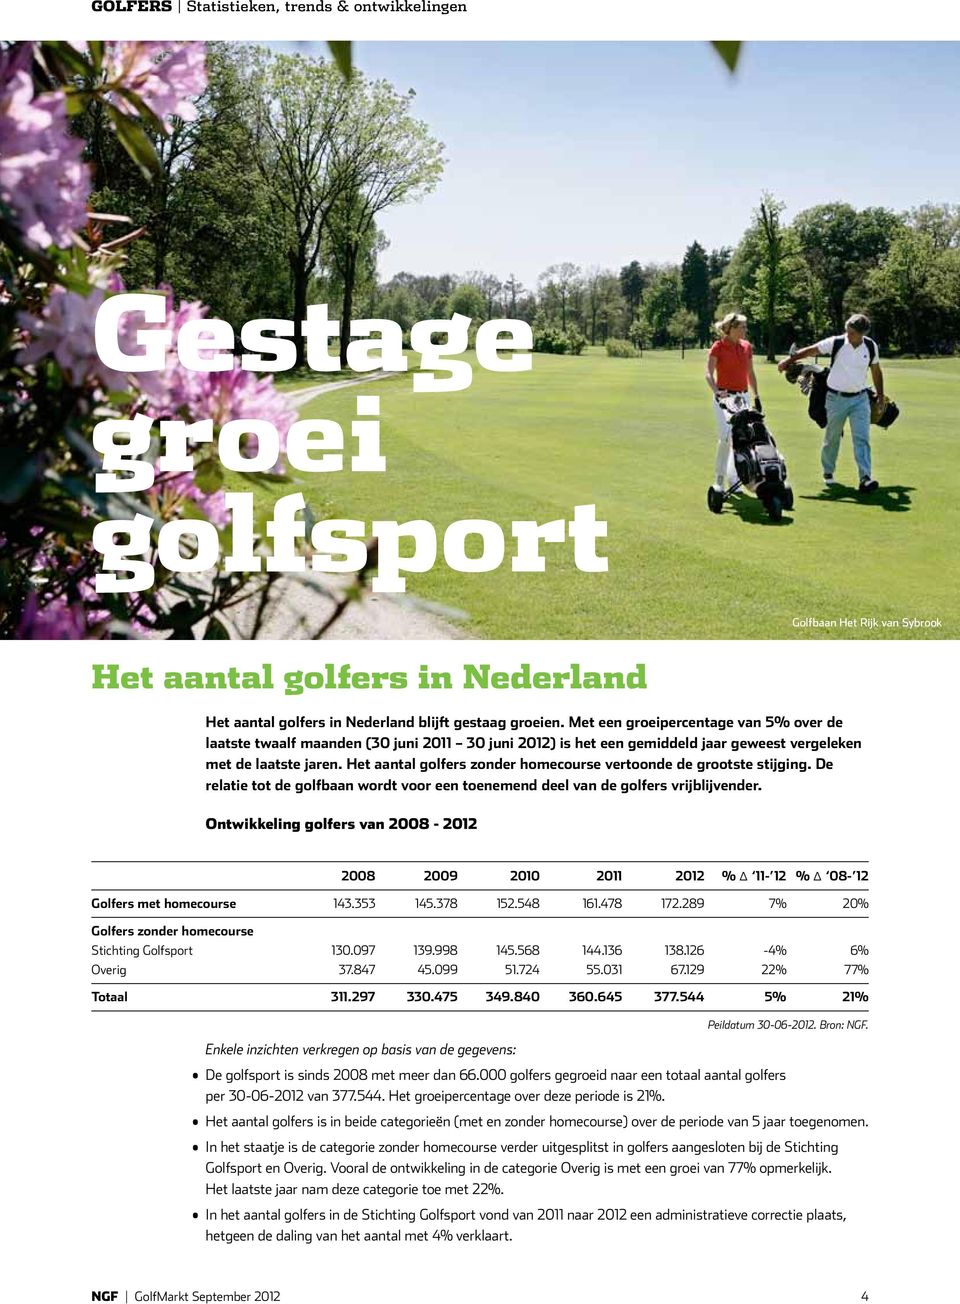 Het aantal golfers zonder homecourse vertoonde de grootste stijging. De relatie tot de golfbaan wordt voor een toenemend deel van de golfers vrijblijvender.